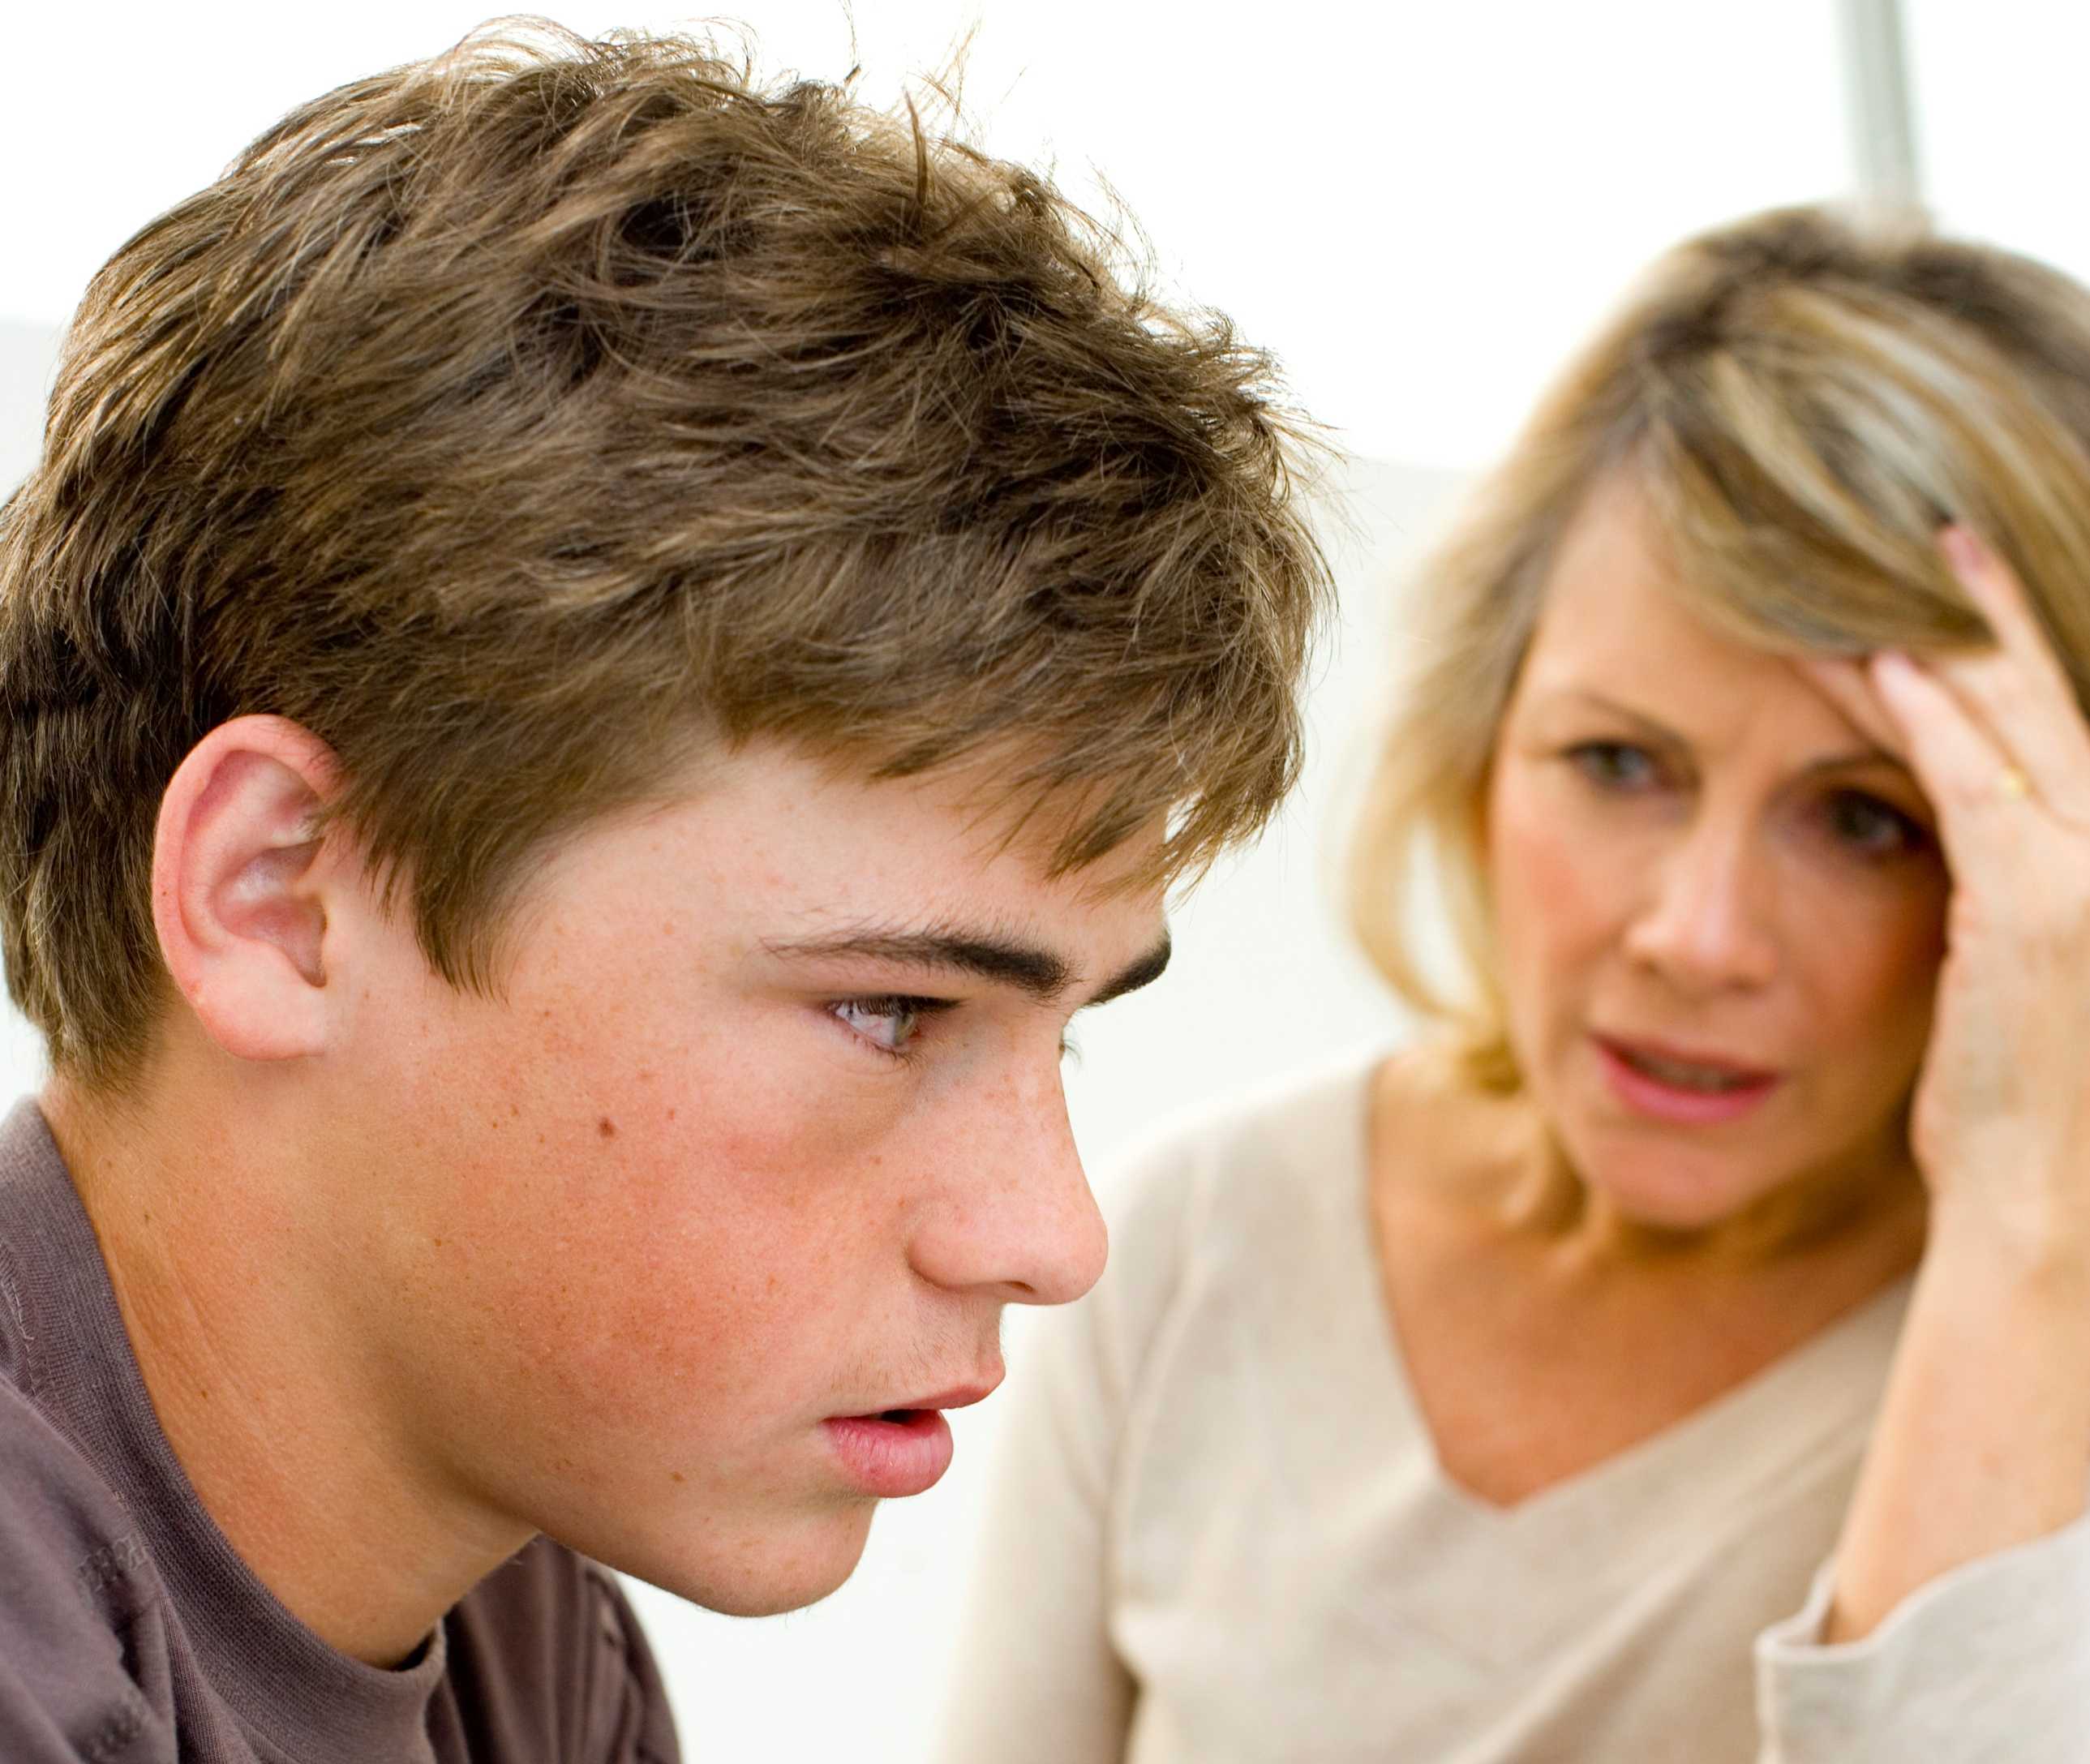 О подростковой грубости и неуважении — причины и решение проблемы 